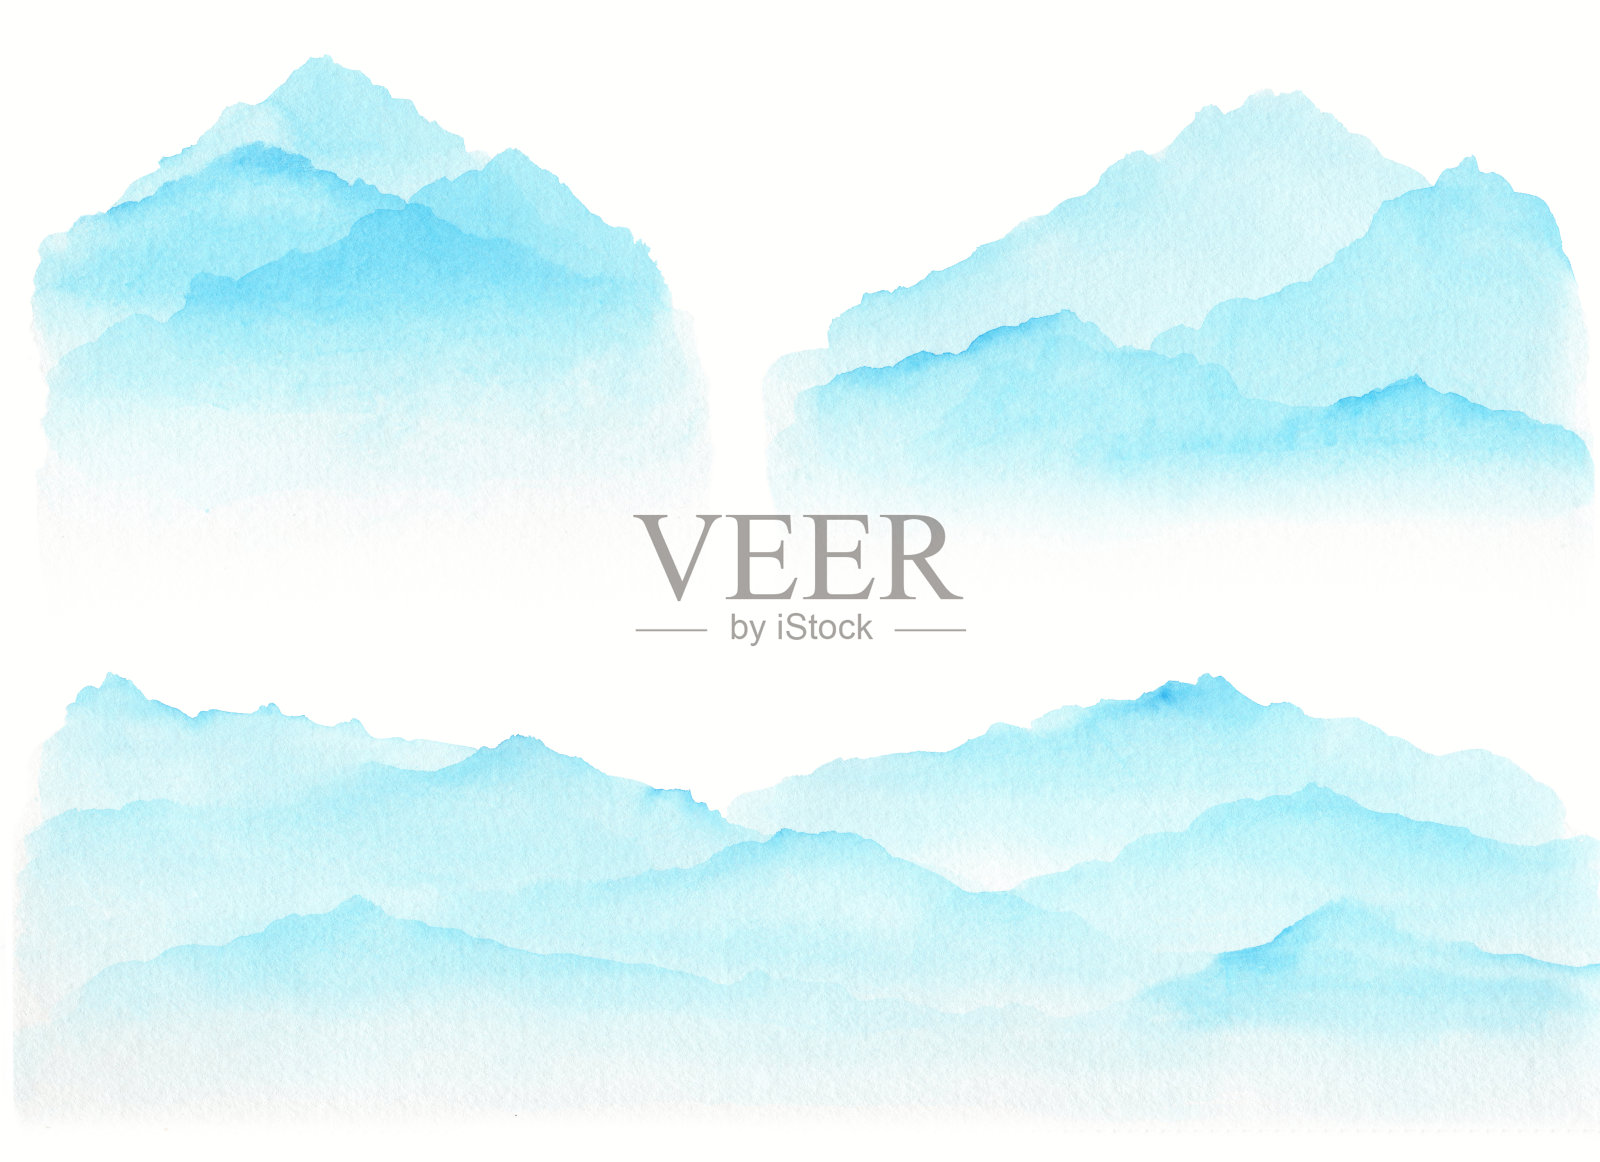 一套抽象的天蓝色水彩波山在白色的背景插画图片素材